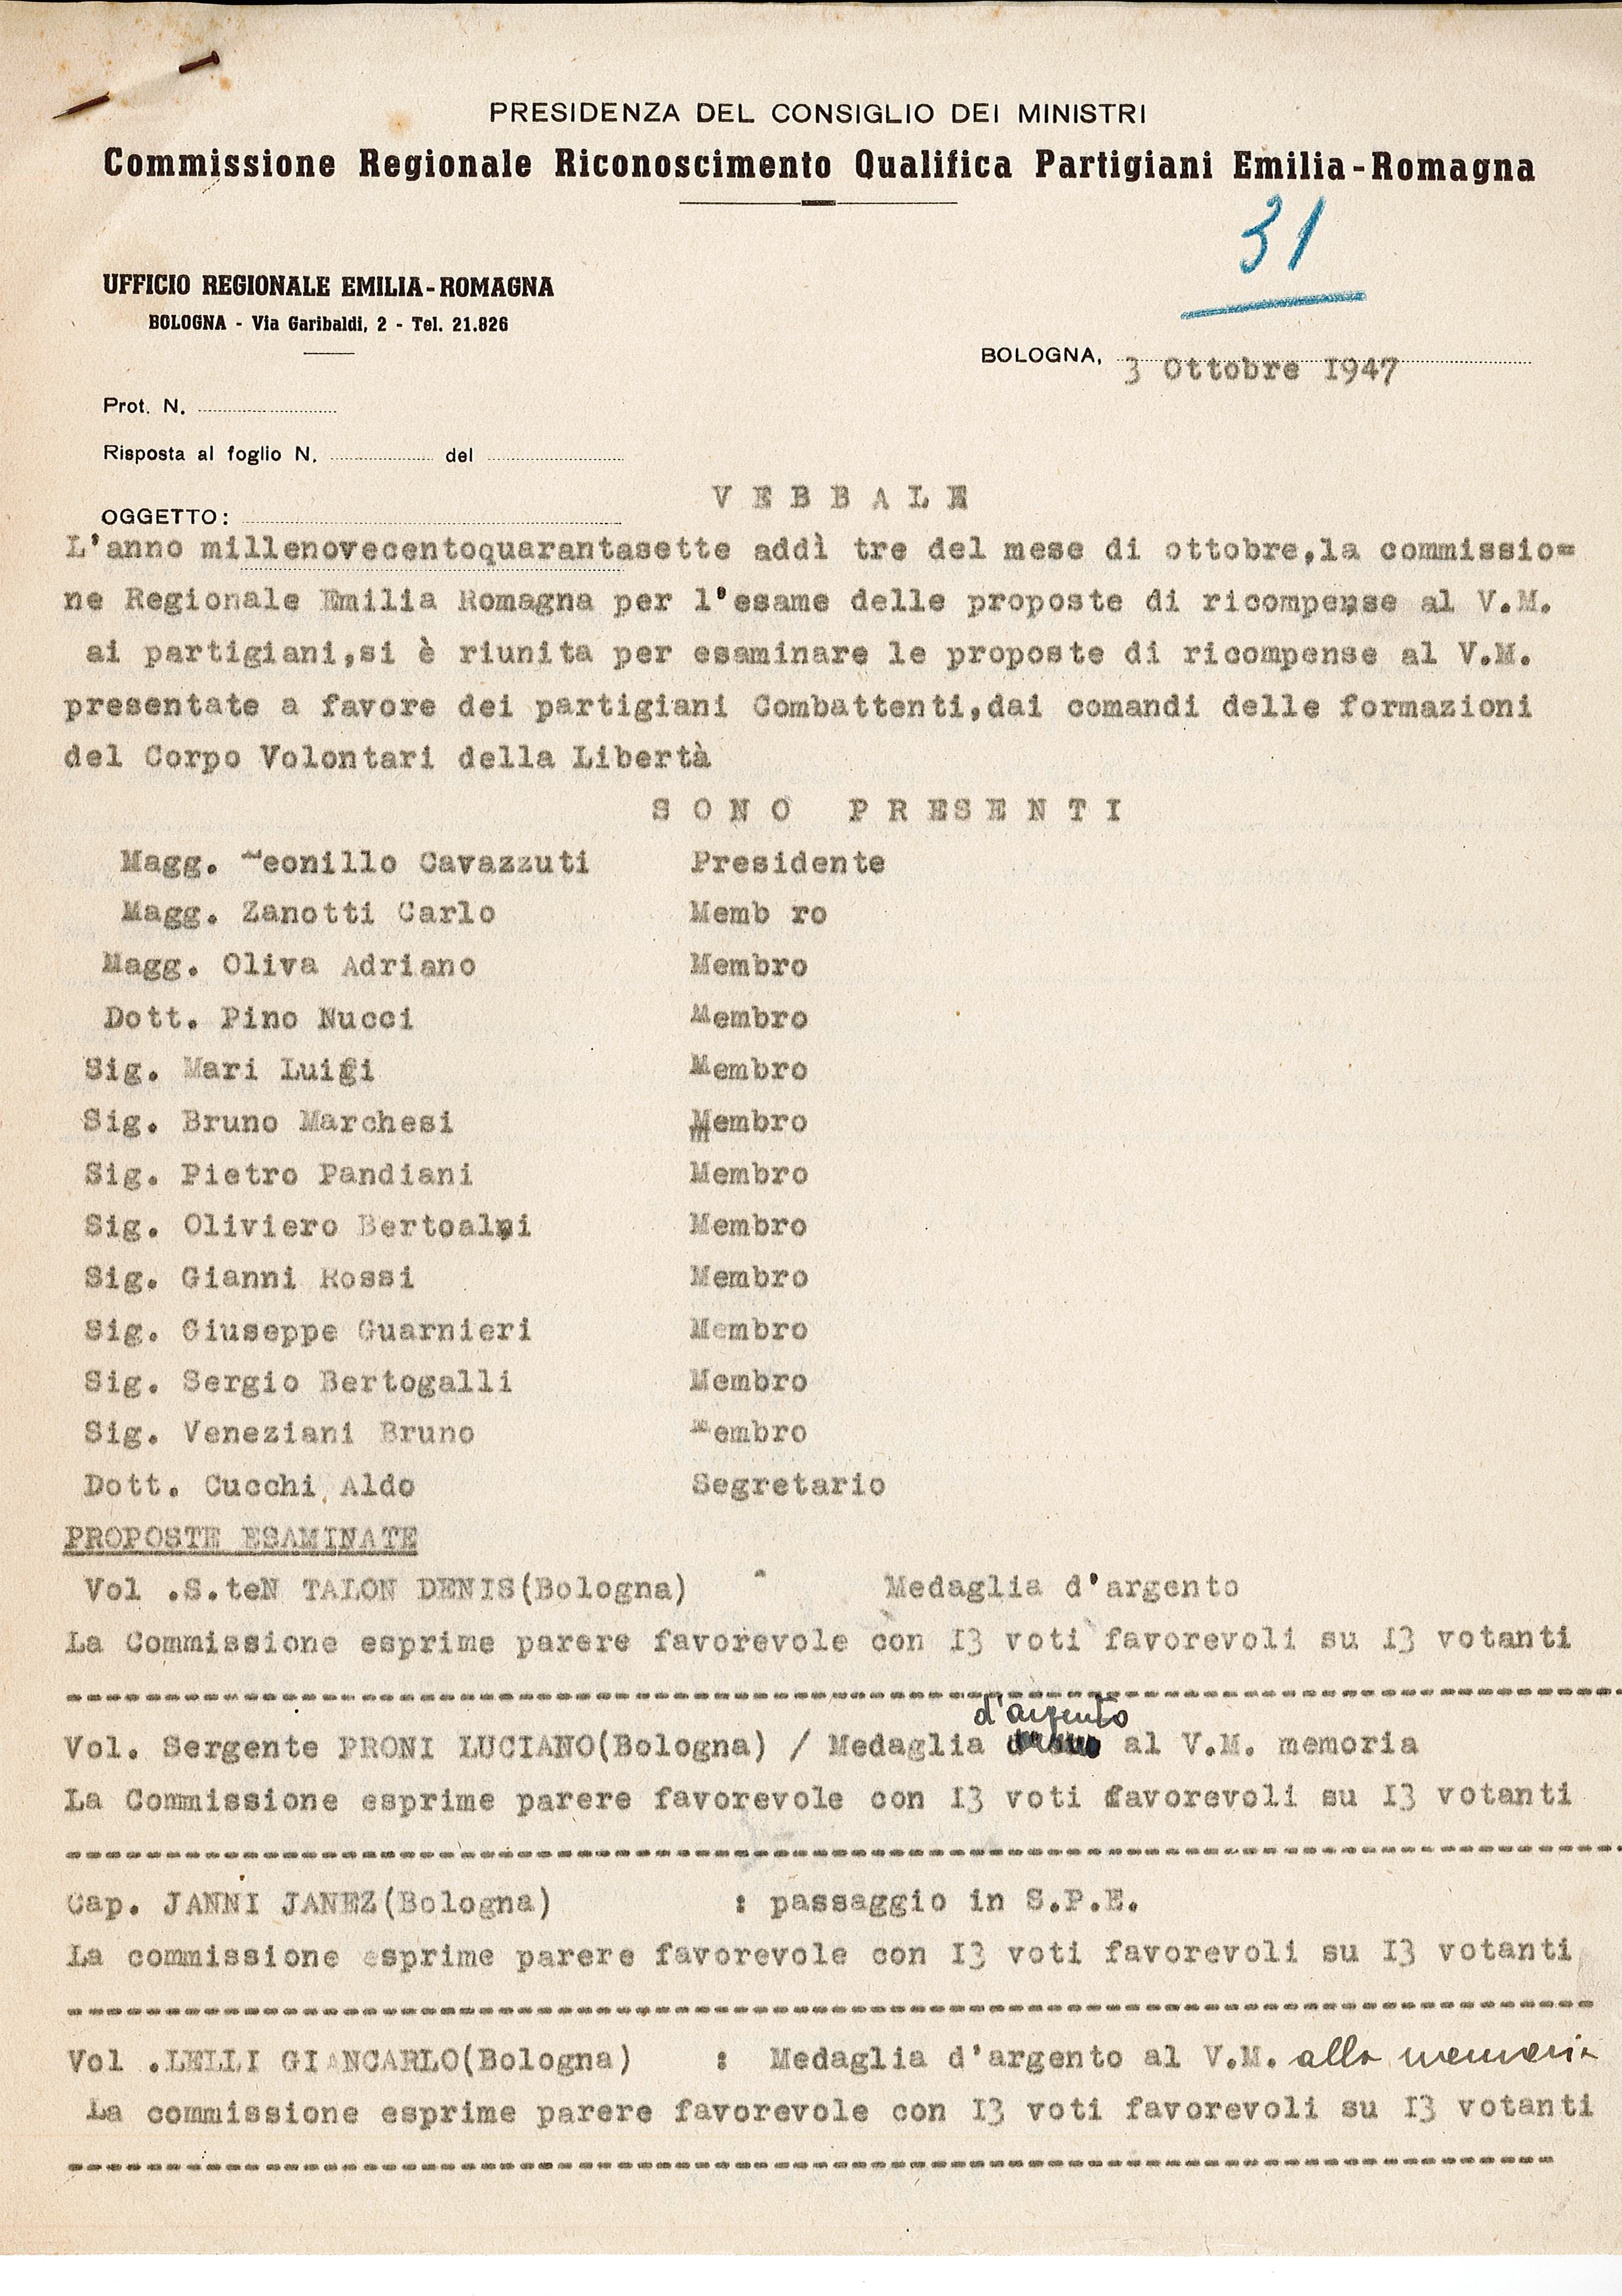 Fig. 3. Verbale della Commissione regionale riconoscimento partigiani in Emilia-Romagna, 3 ottobre 1947 [AISP].